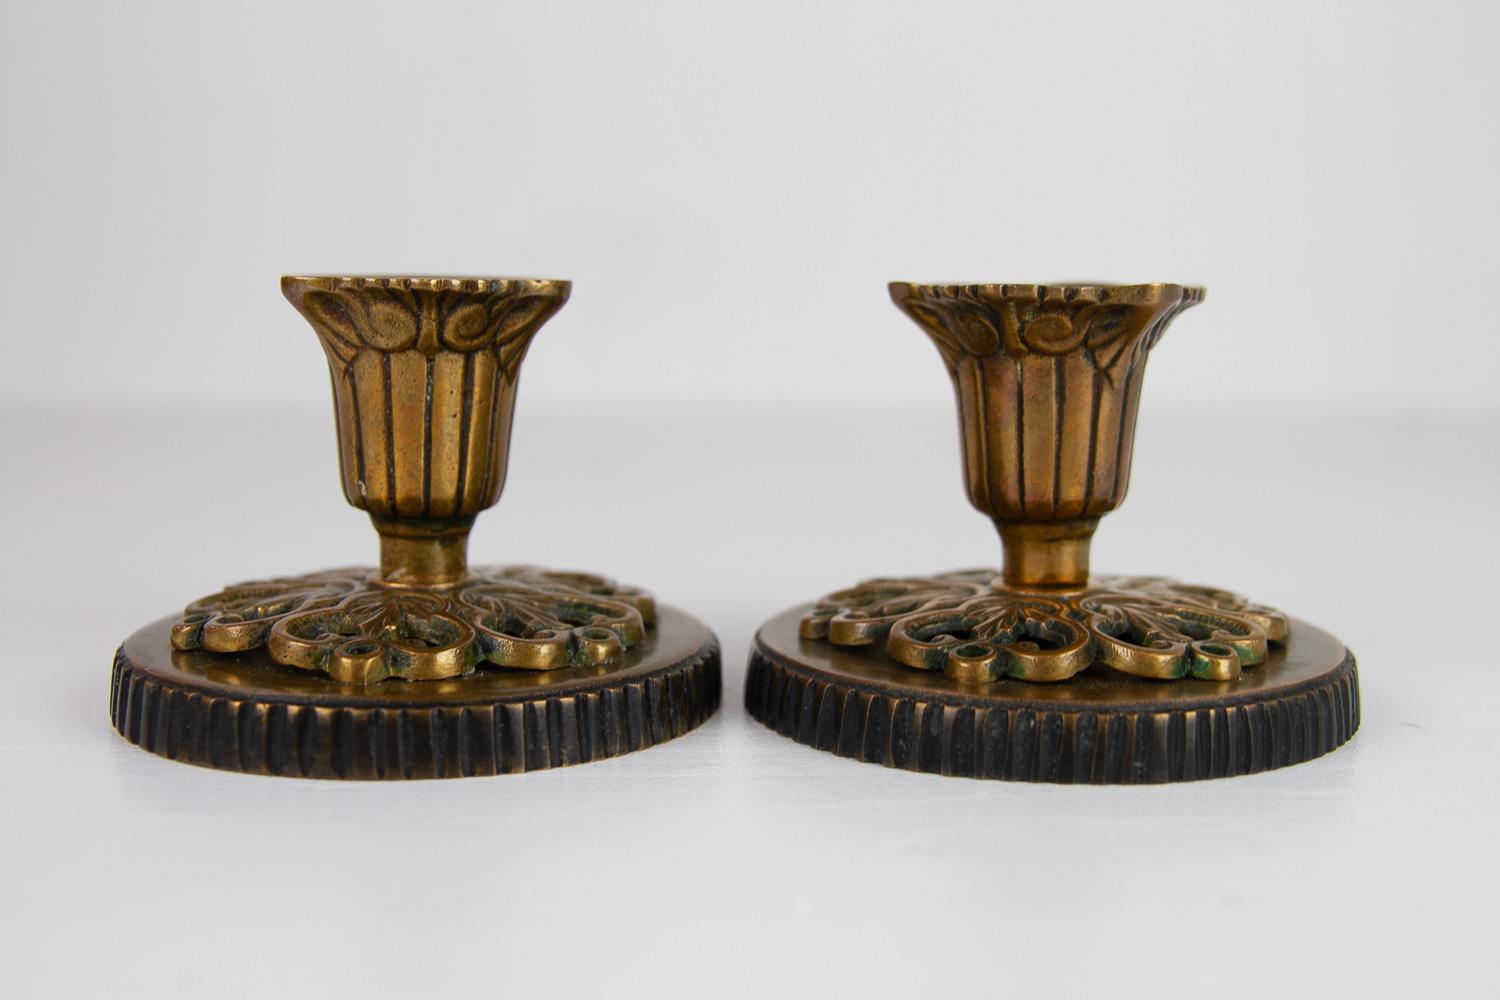 Dänische Vintage-Jugendstil-Kerzenhalter aus Bronze, 1930er Jahre. Satz von 2. 
Schönes Paar Kerzenständer im dänischen 